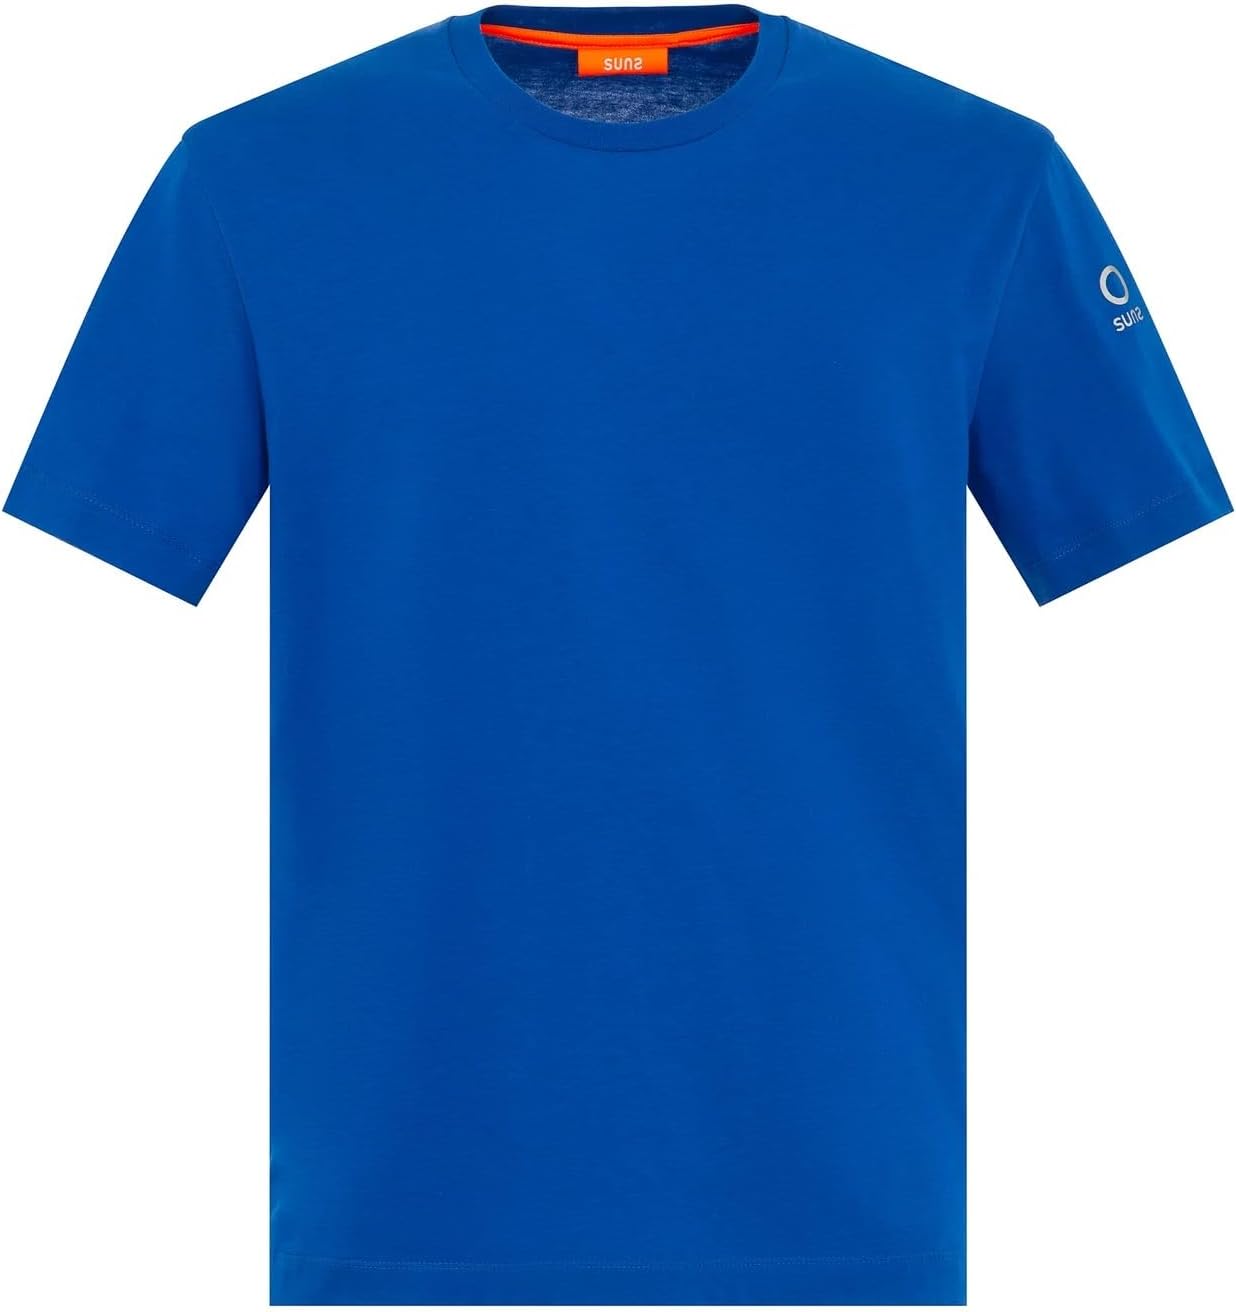 SUNS T-shirt Uomo - Blu modello TSS41005U